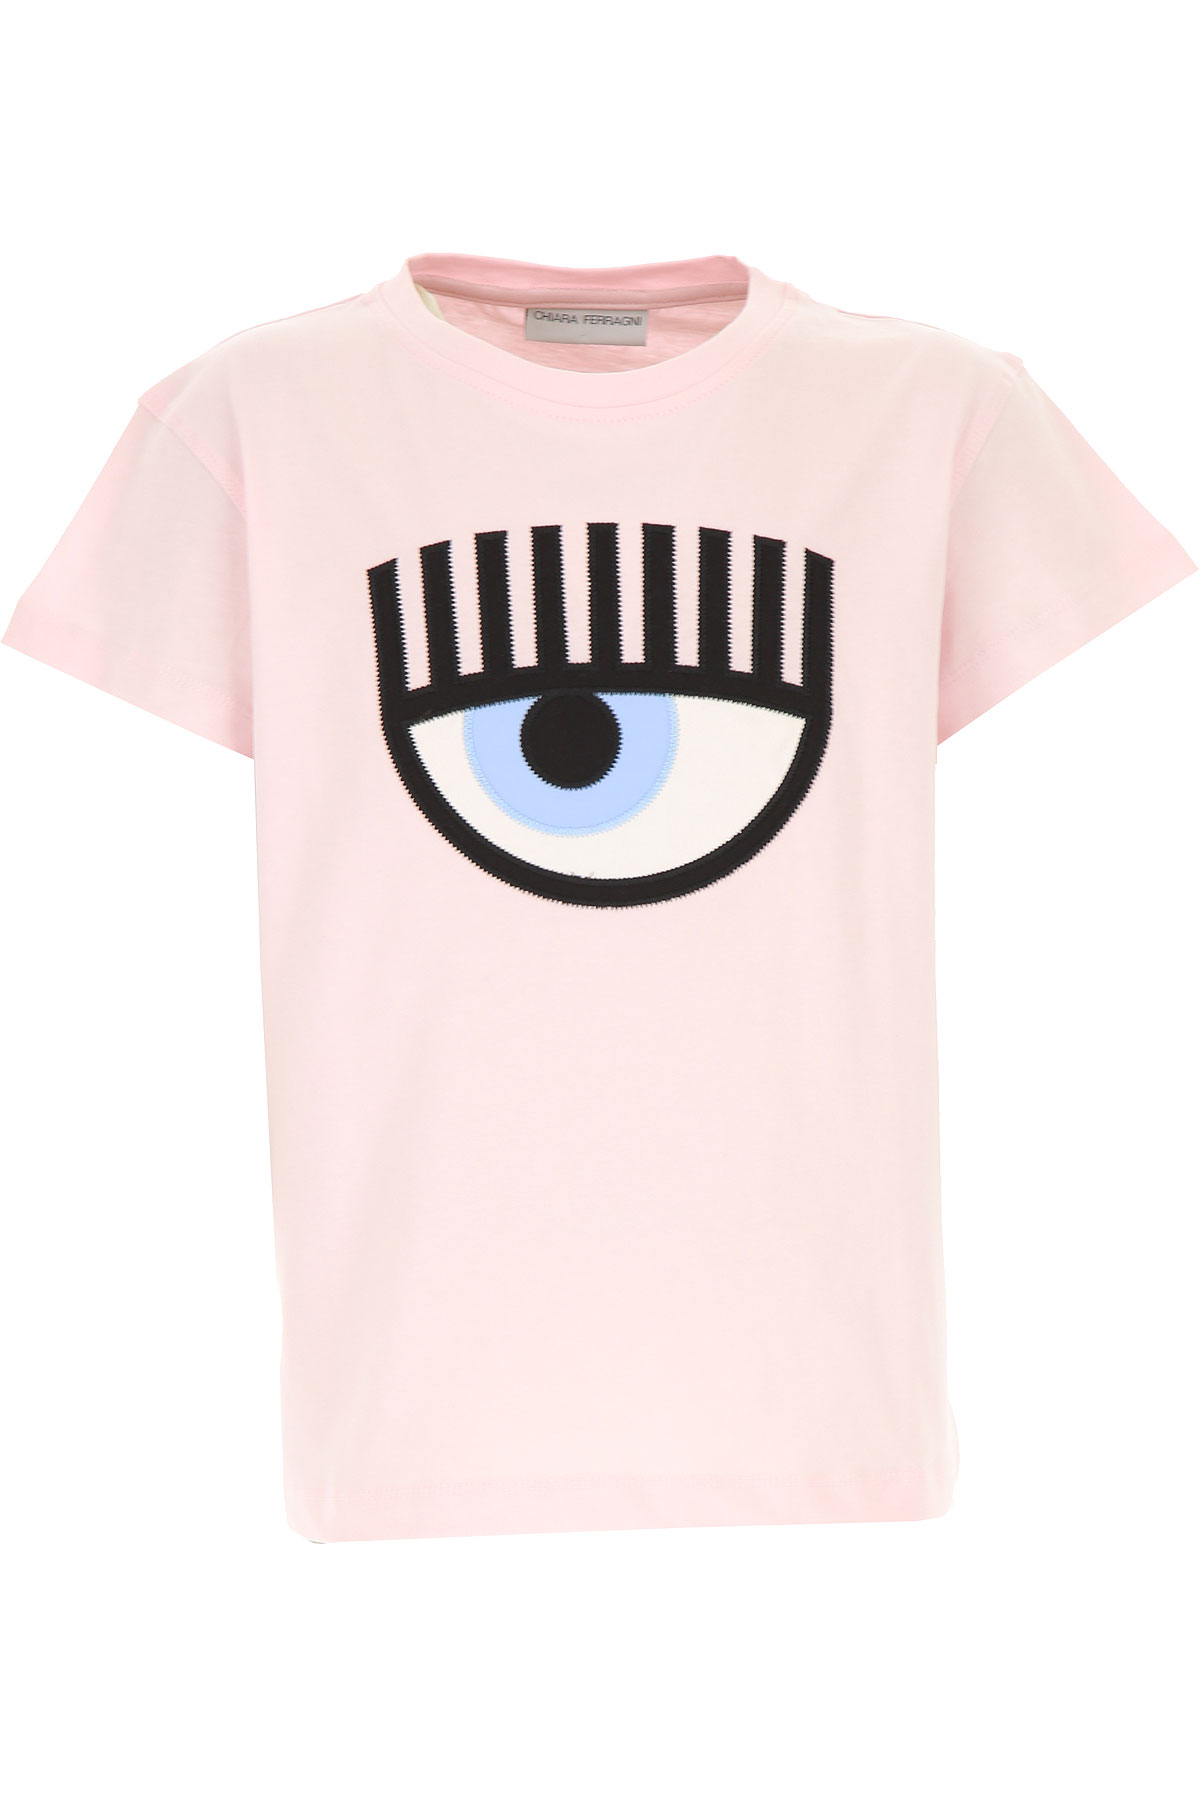 Chiara Ferragni Kinder T-Shirt für Mädchen Günstig im Sale, Pink, Baumwolle, 2017, 10Y 10Y 12Y 12Y 14Y 14Y 6Y 8Y